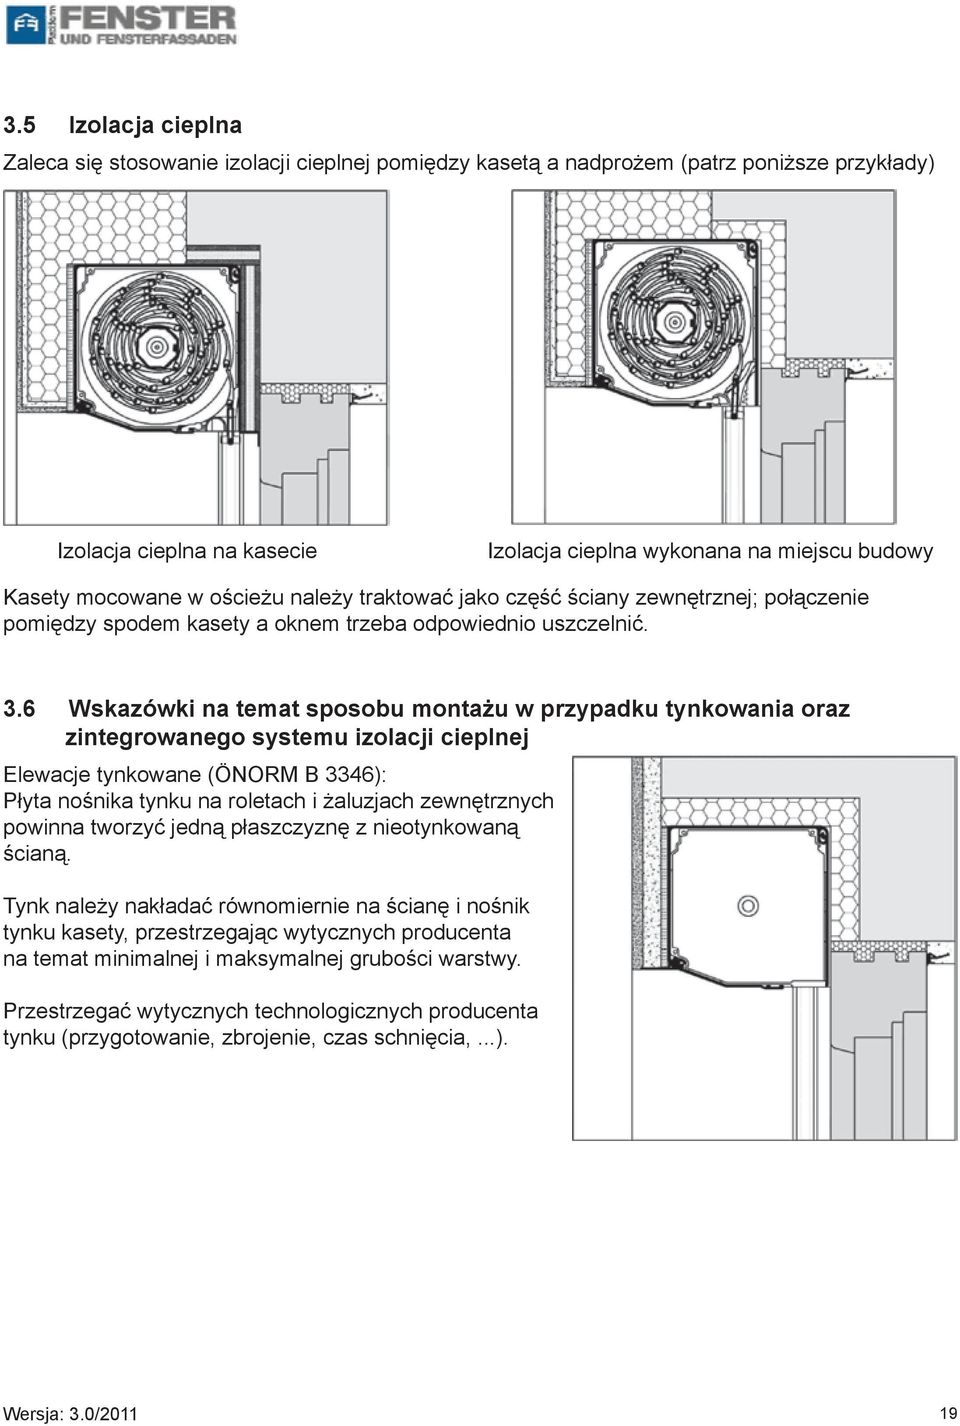 6 Wskazówki na temat sposobu montażu w przypadku tynkowania oraz zintegrowanego systemu izolacji cieplnej Elewacje tynkowane (ÖNORM B 3346): Płyta nośnika tynku na roletach i żaluzjach zewnętrznych